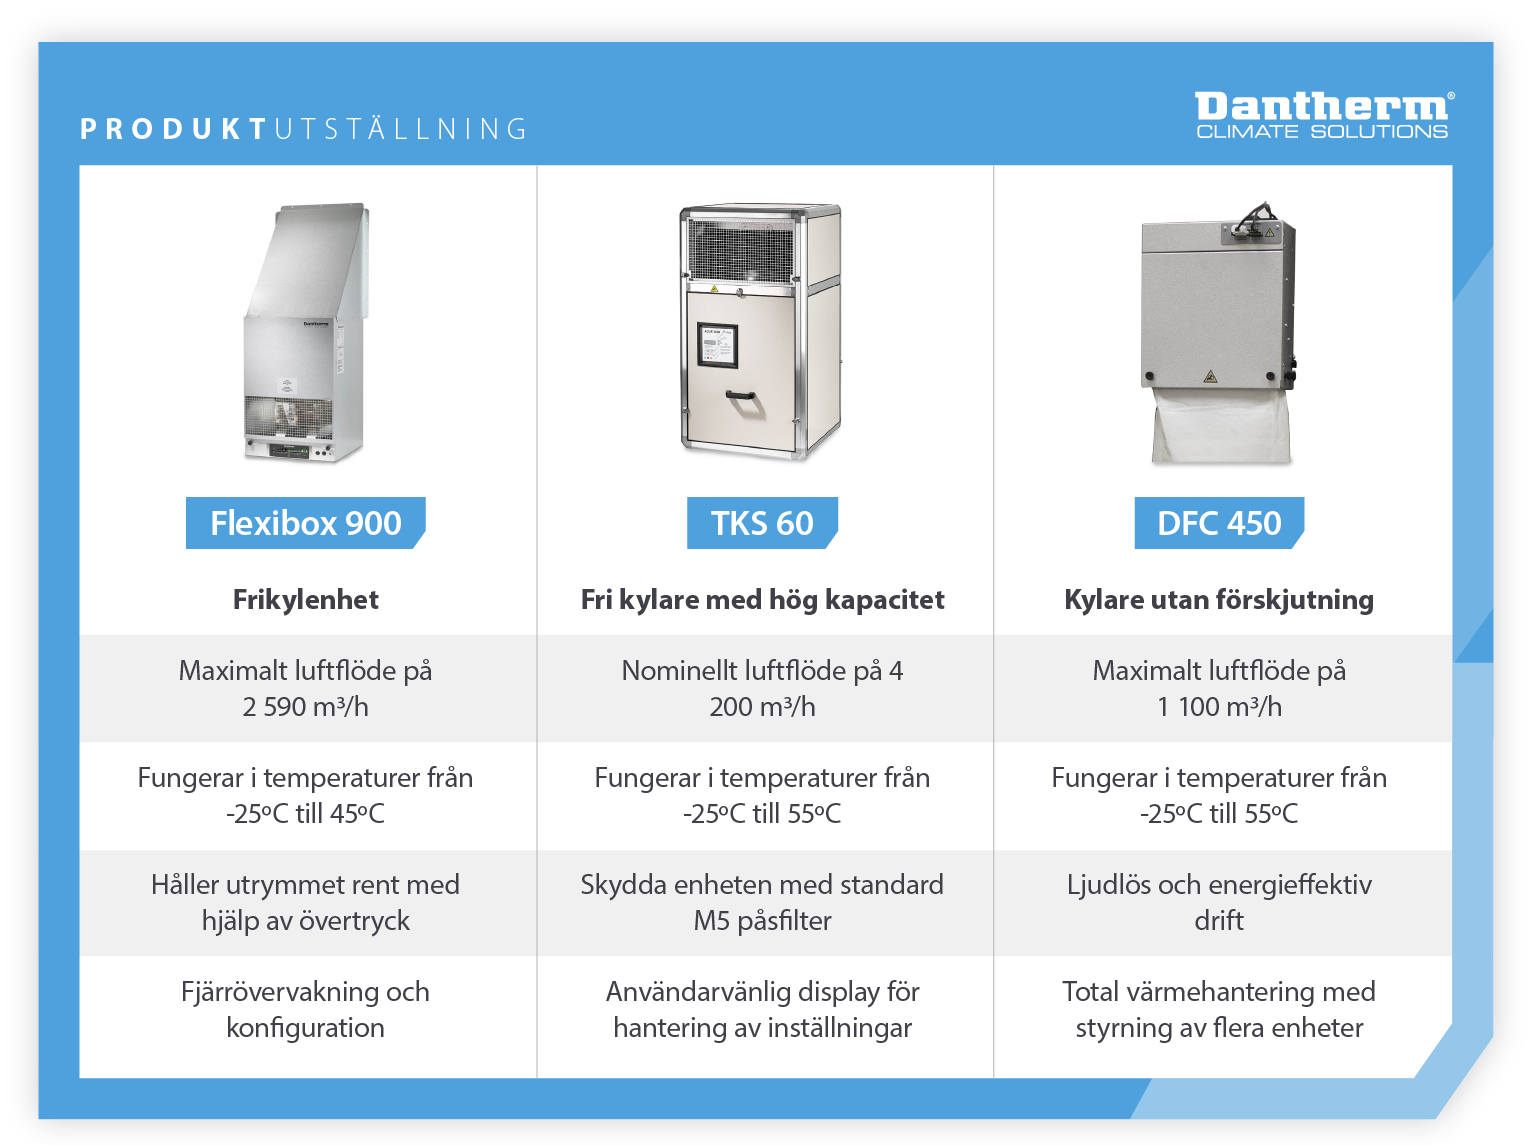 Produktvisning med jämförelser av egenskaperna hos Dantherms frikylaggregat, inklusive frikylaggregat med hög kapacitet och deplacement